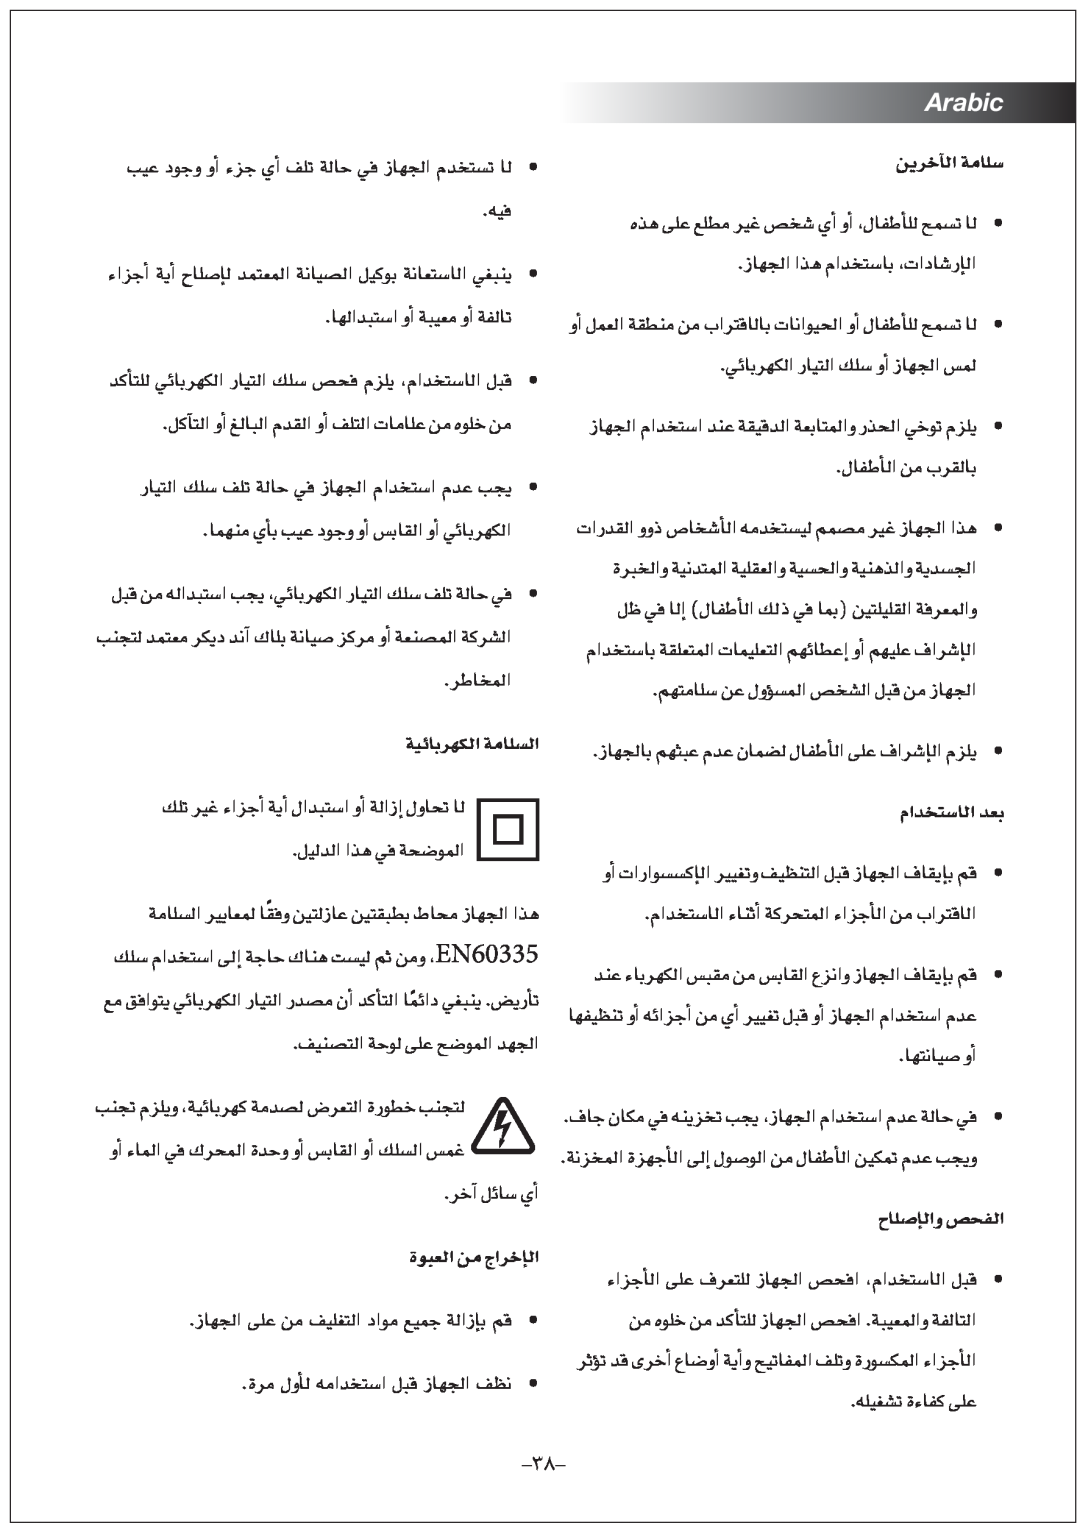 Black & Decker FX1000 manual øjôNBÉdG áeÉ∏S, ΩGóîàSÉdG óH, ìÉ∏UEÉdGh ¢üëØdG, Arabic, É¡dGóÑàSG hCG áÑ«e hCG áØdÉJ 